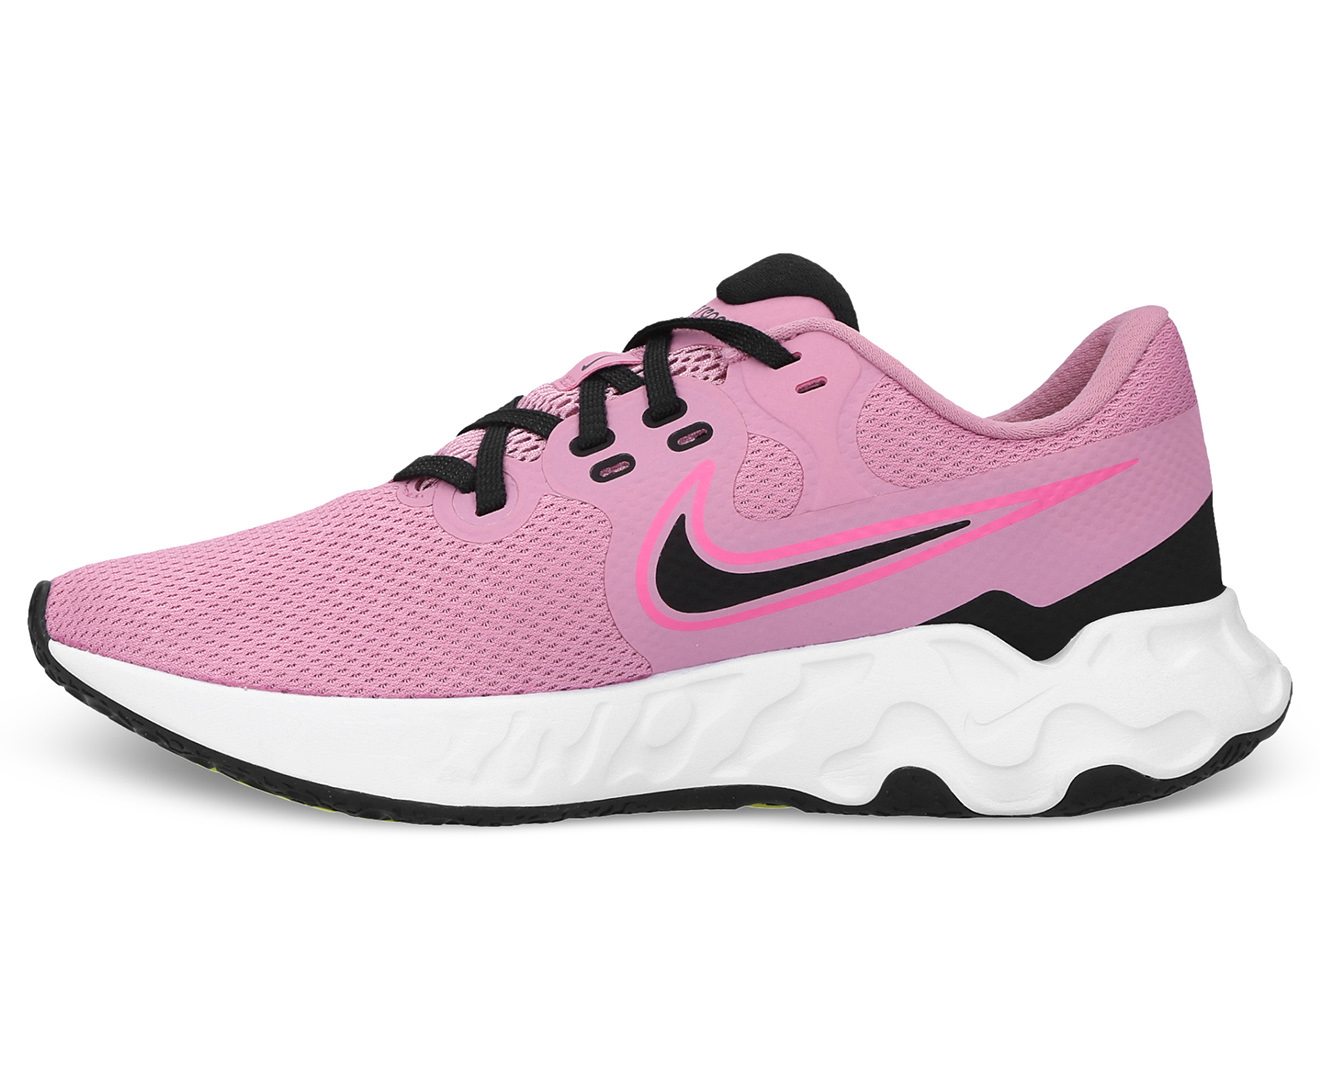 Nike Women's Renew Ride 2 Running Shoes - Elemental Pink/Black/Pink ...